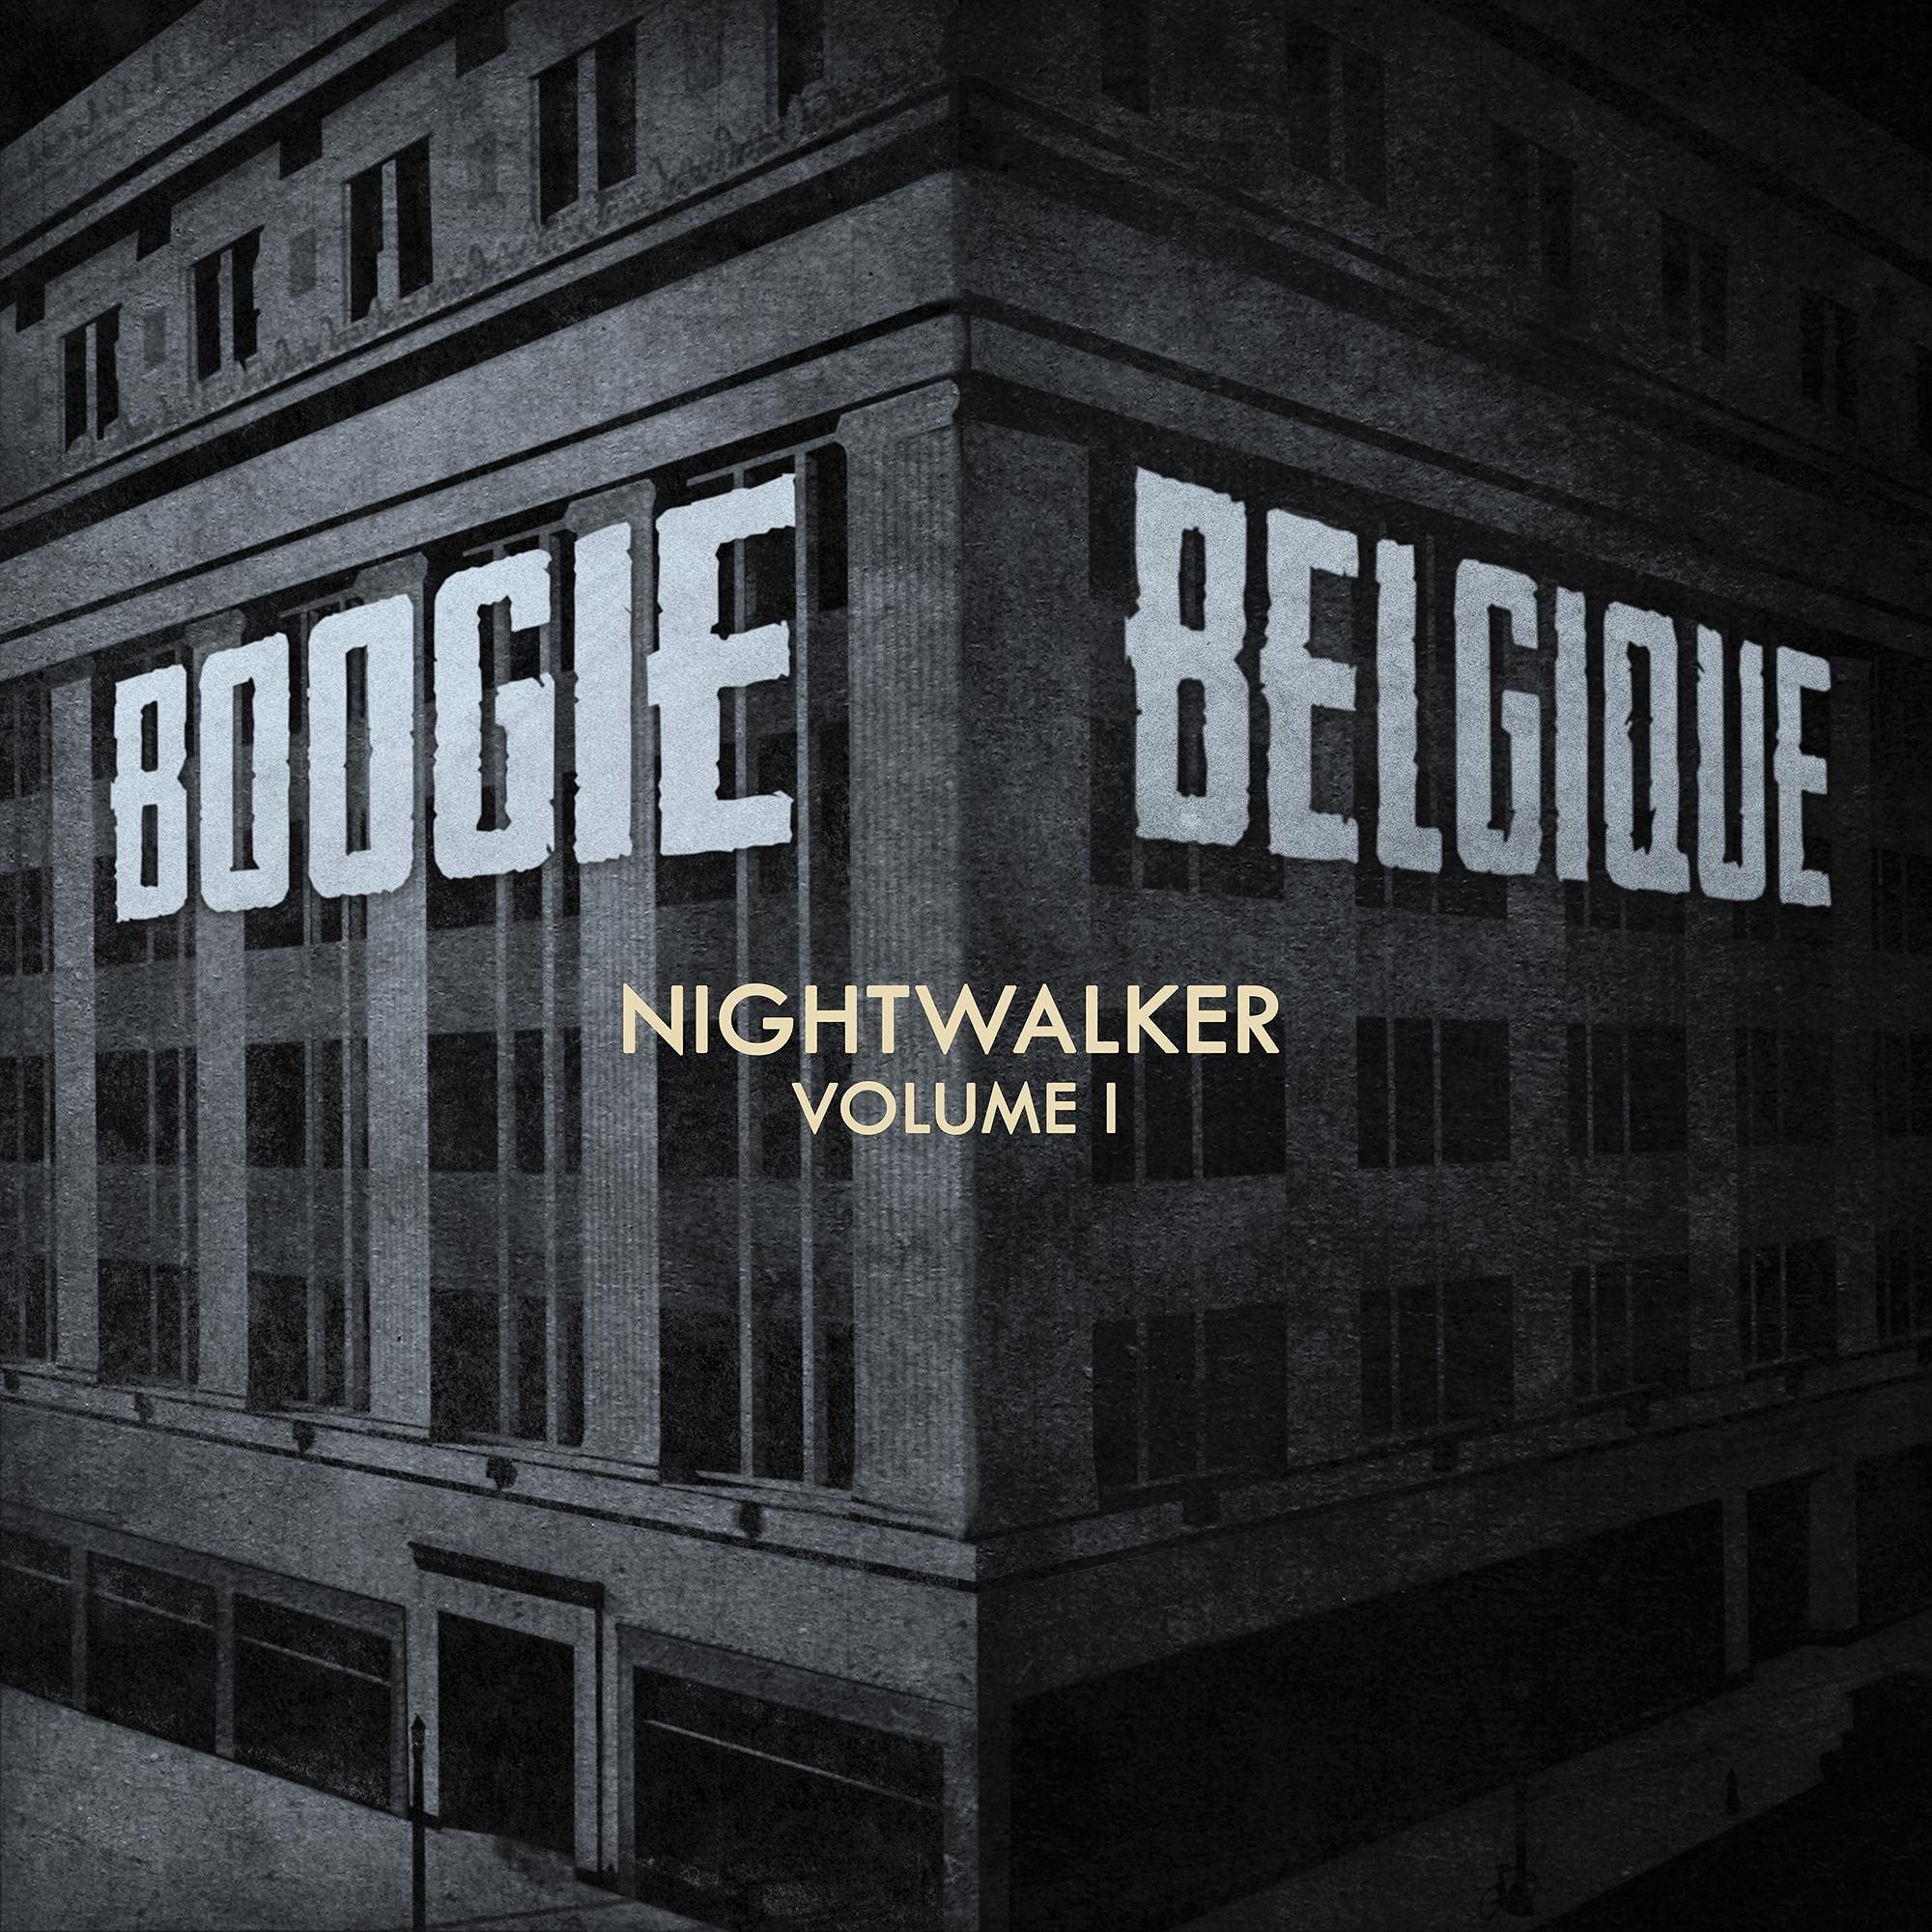 Vinile Boogie Belgique - Nightwalker Vol.1 NUOVO SIGILLATO EDIZIONE DEL SUBITO DISPONIBILE